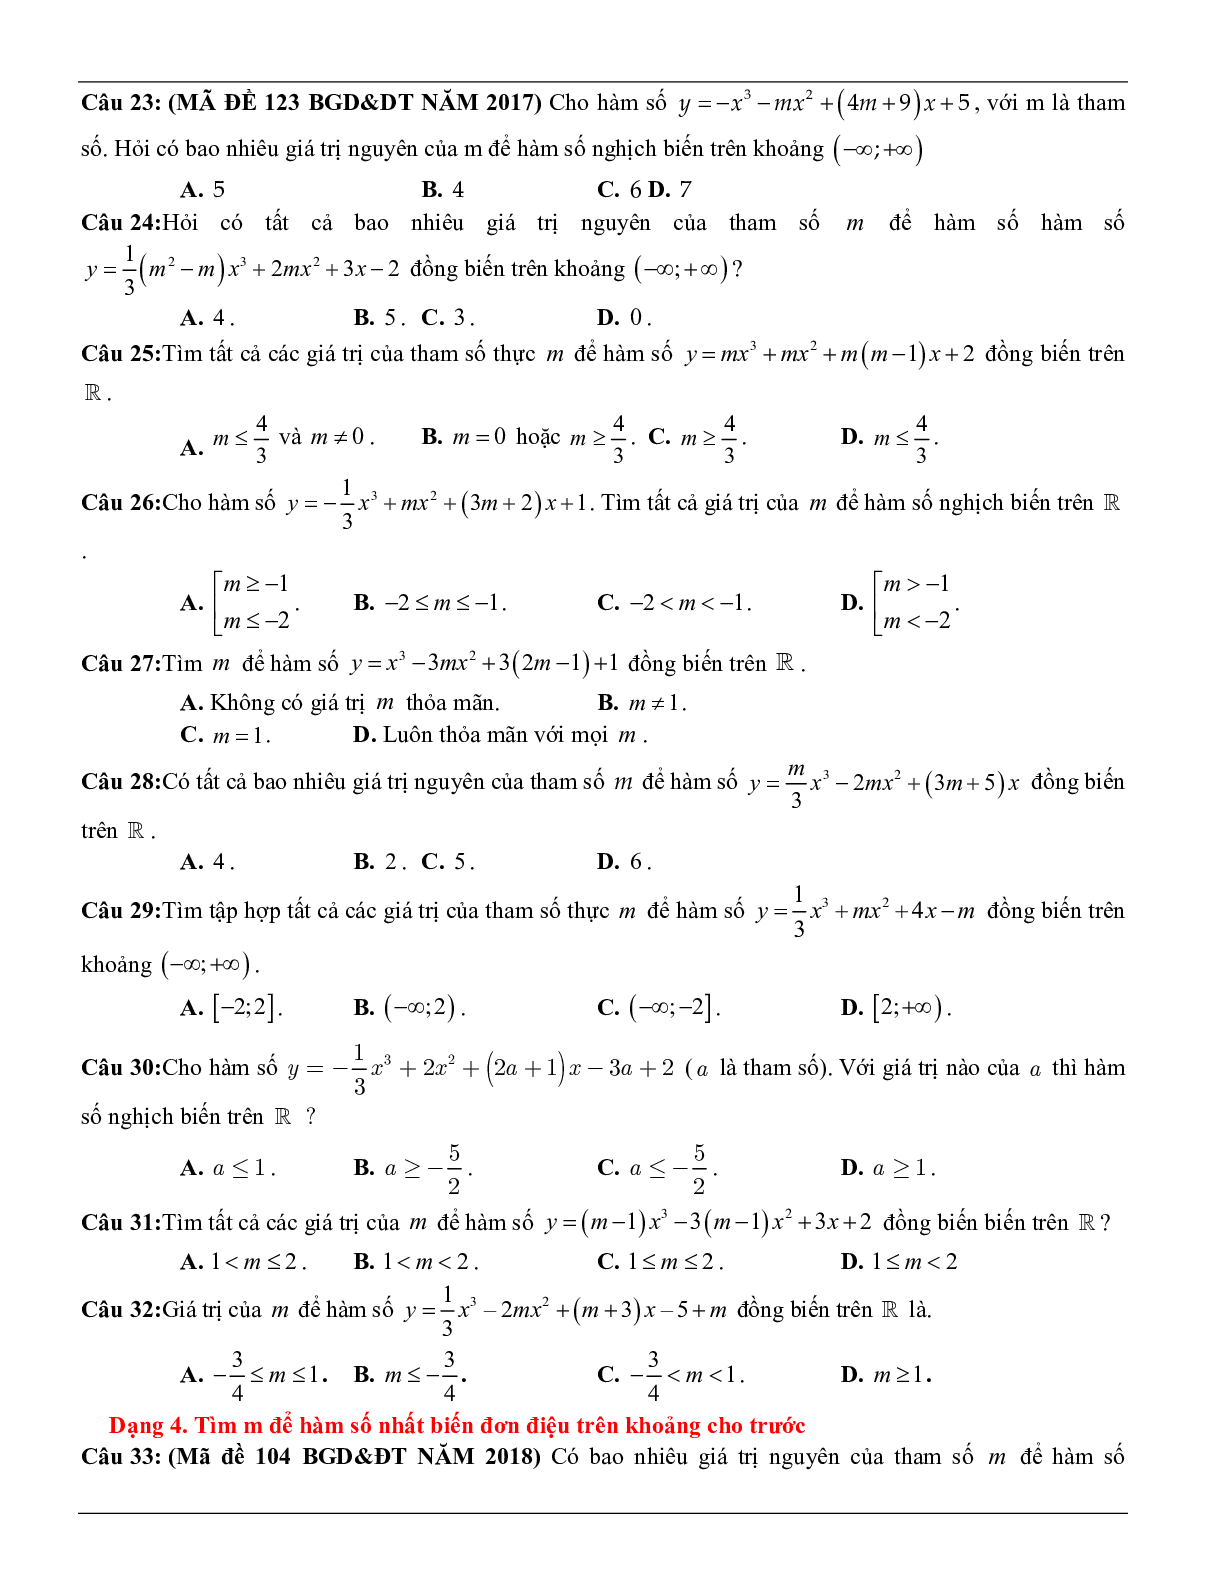 Các dạng toán về tính đơn điệu của hàm số thường gặp trong kỳ thi THPT Quốc gia (trang 5)